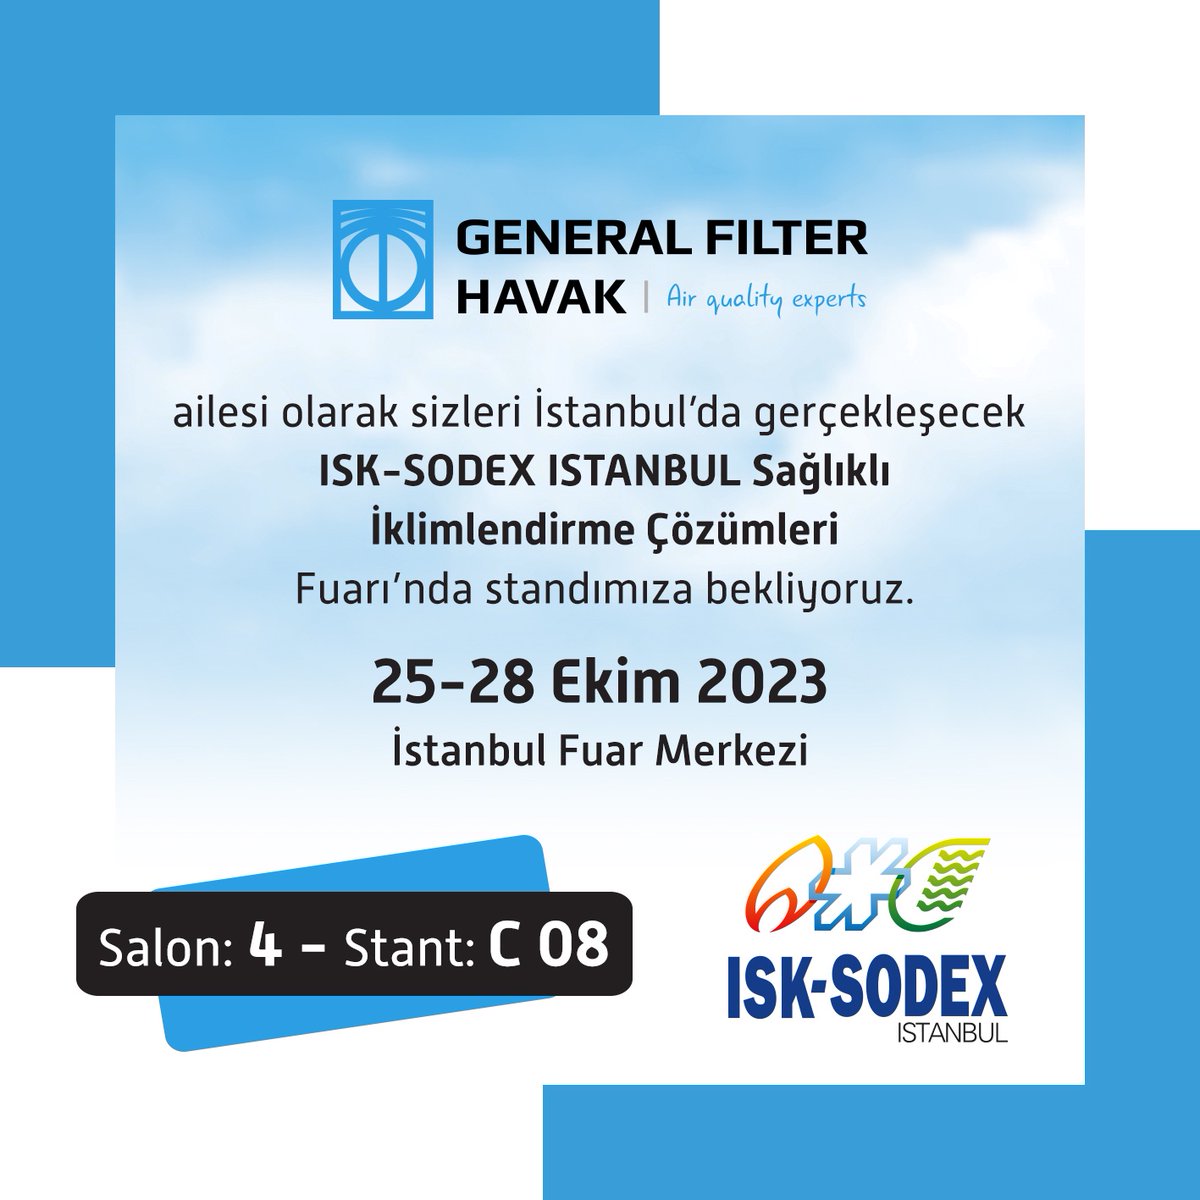 25-28 Ekim 2023 / İstanbul Fuar Merkezi 
ISK-SODEX 2023  / Salon 4 - Stant C 08 
#generalfilterhavak #havafiltreleri #airfilters 
lnkd.in/eJSGBySX
Online Kayıt için:
lnkd.in/ezNwp-7k